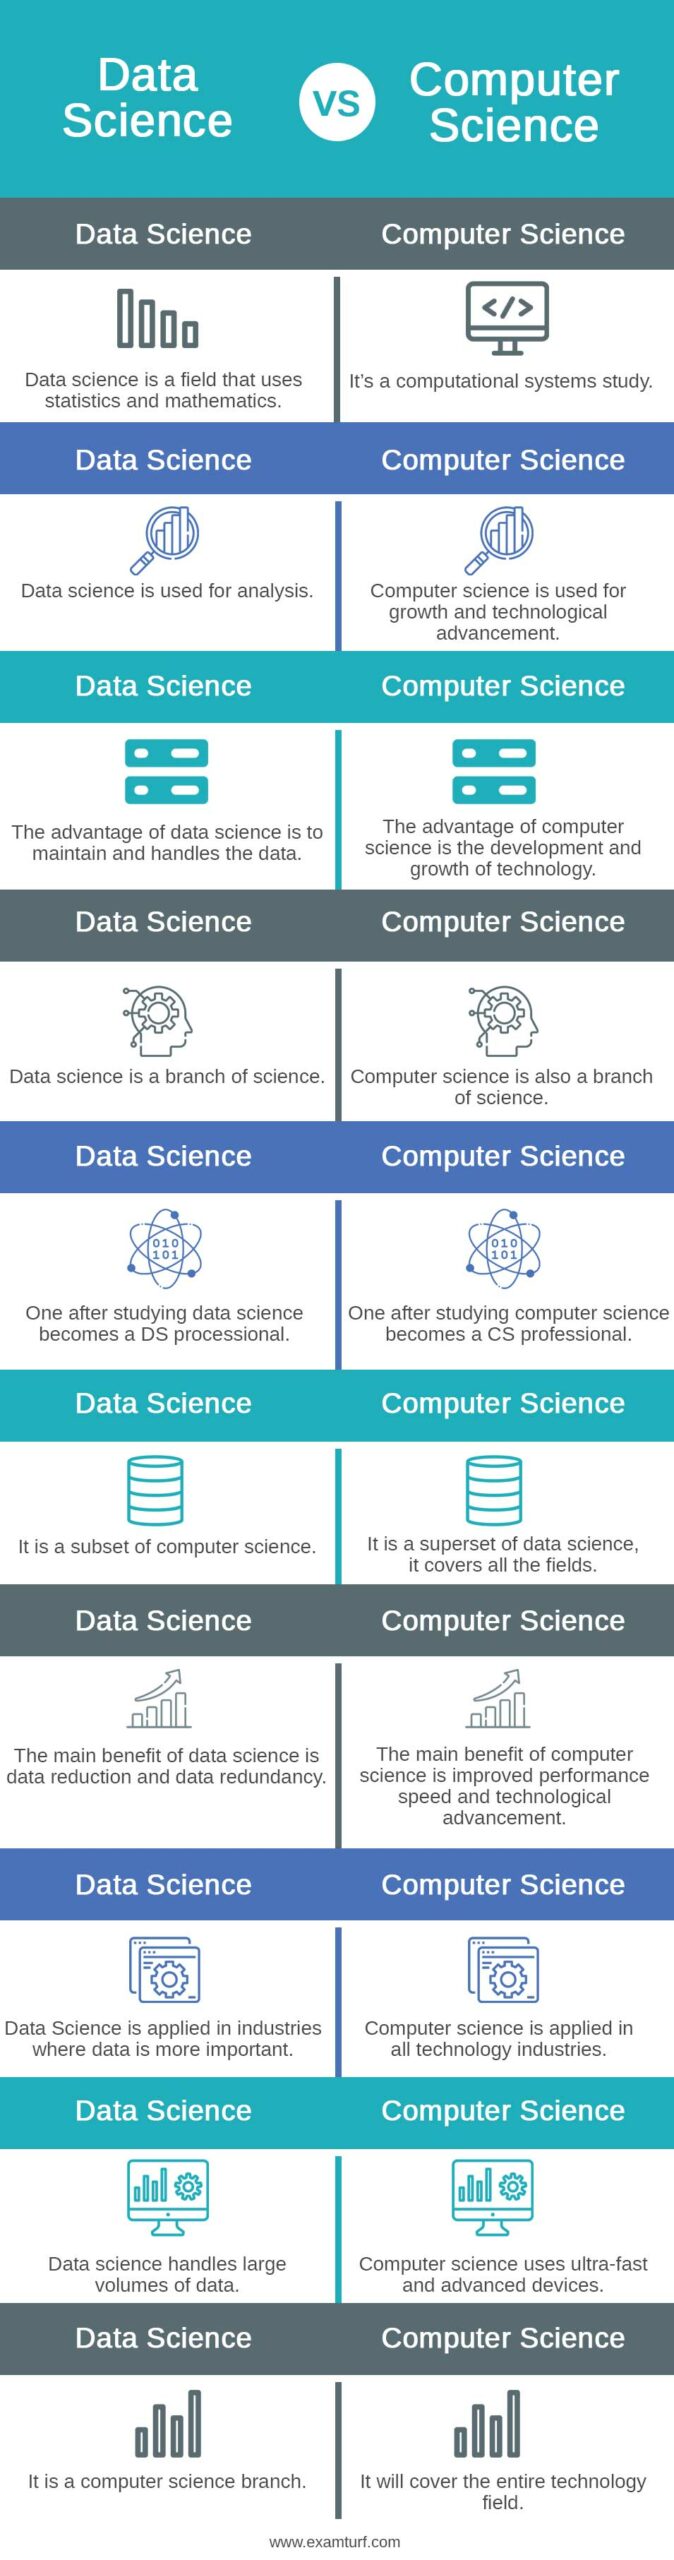 Data-Science-vs-Computer-Science-info